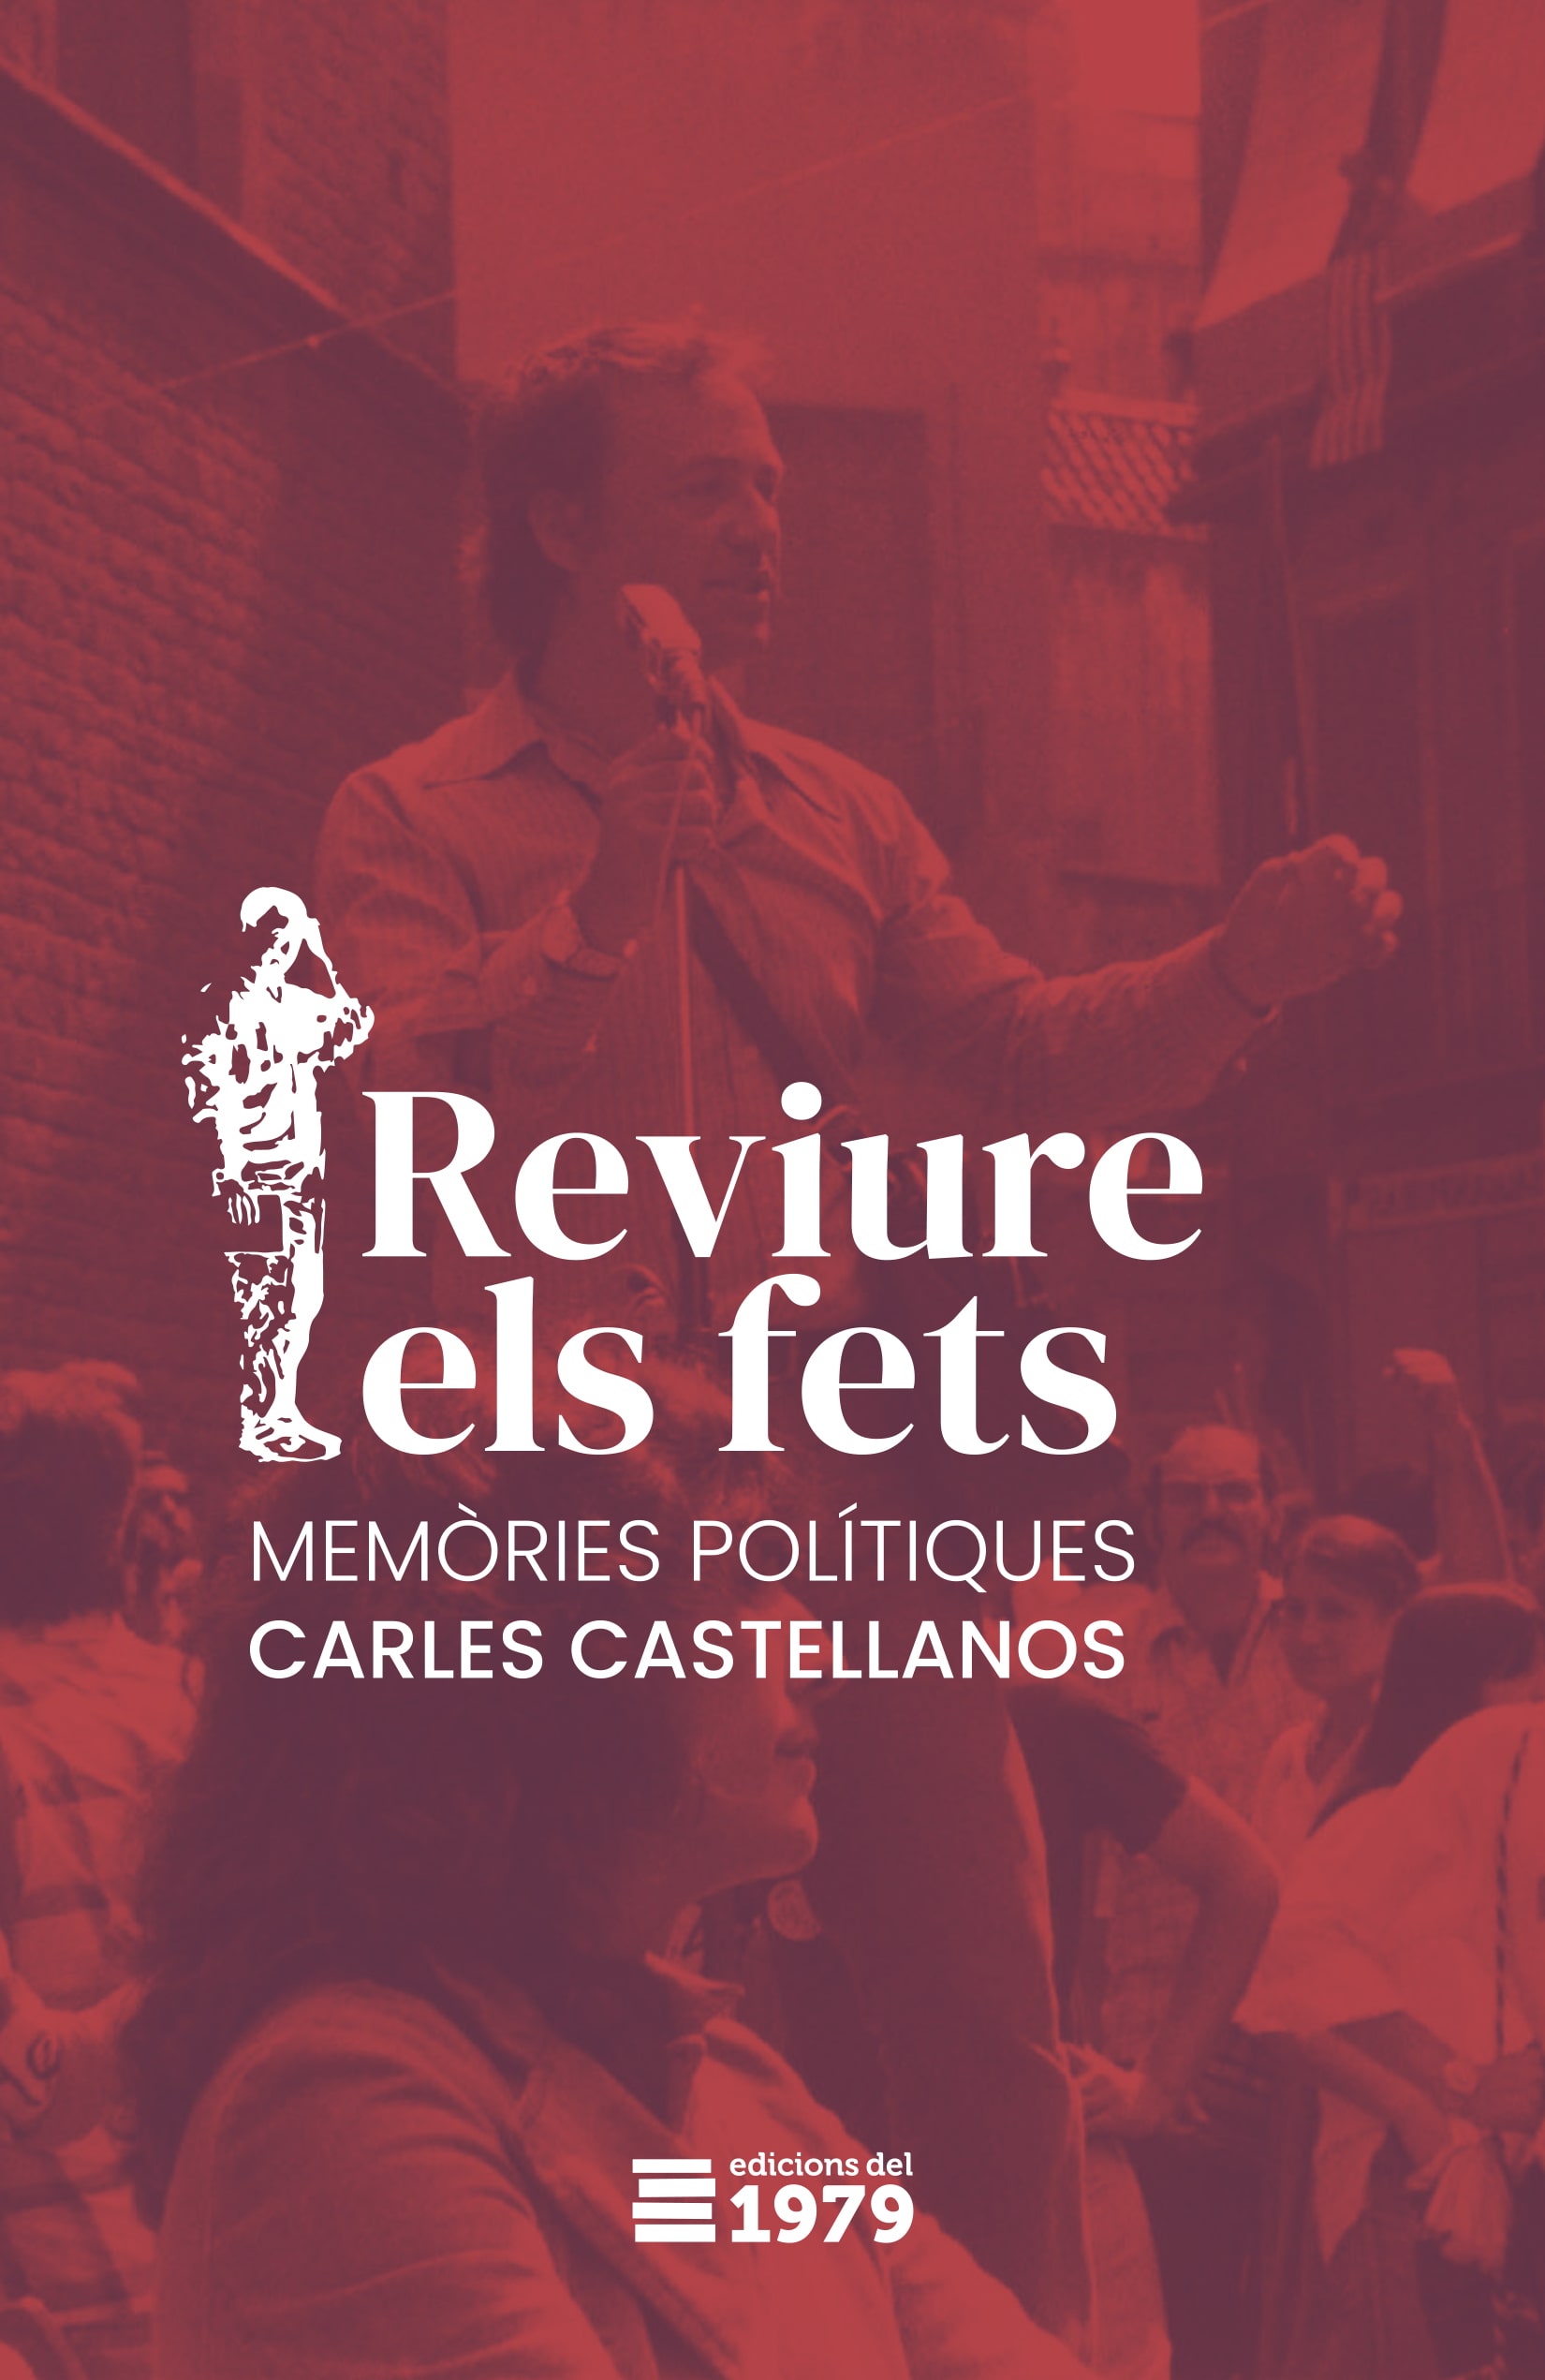 Reviure els fets - Carles Castellanos i Llorenç